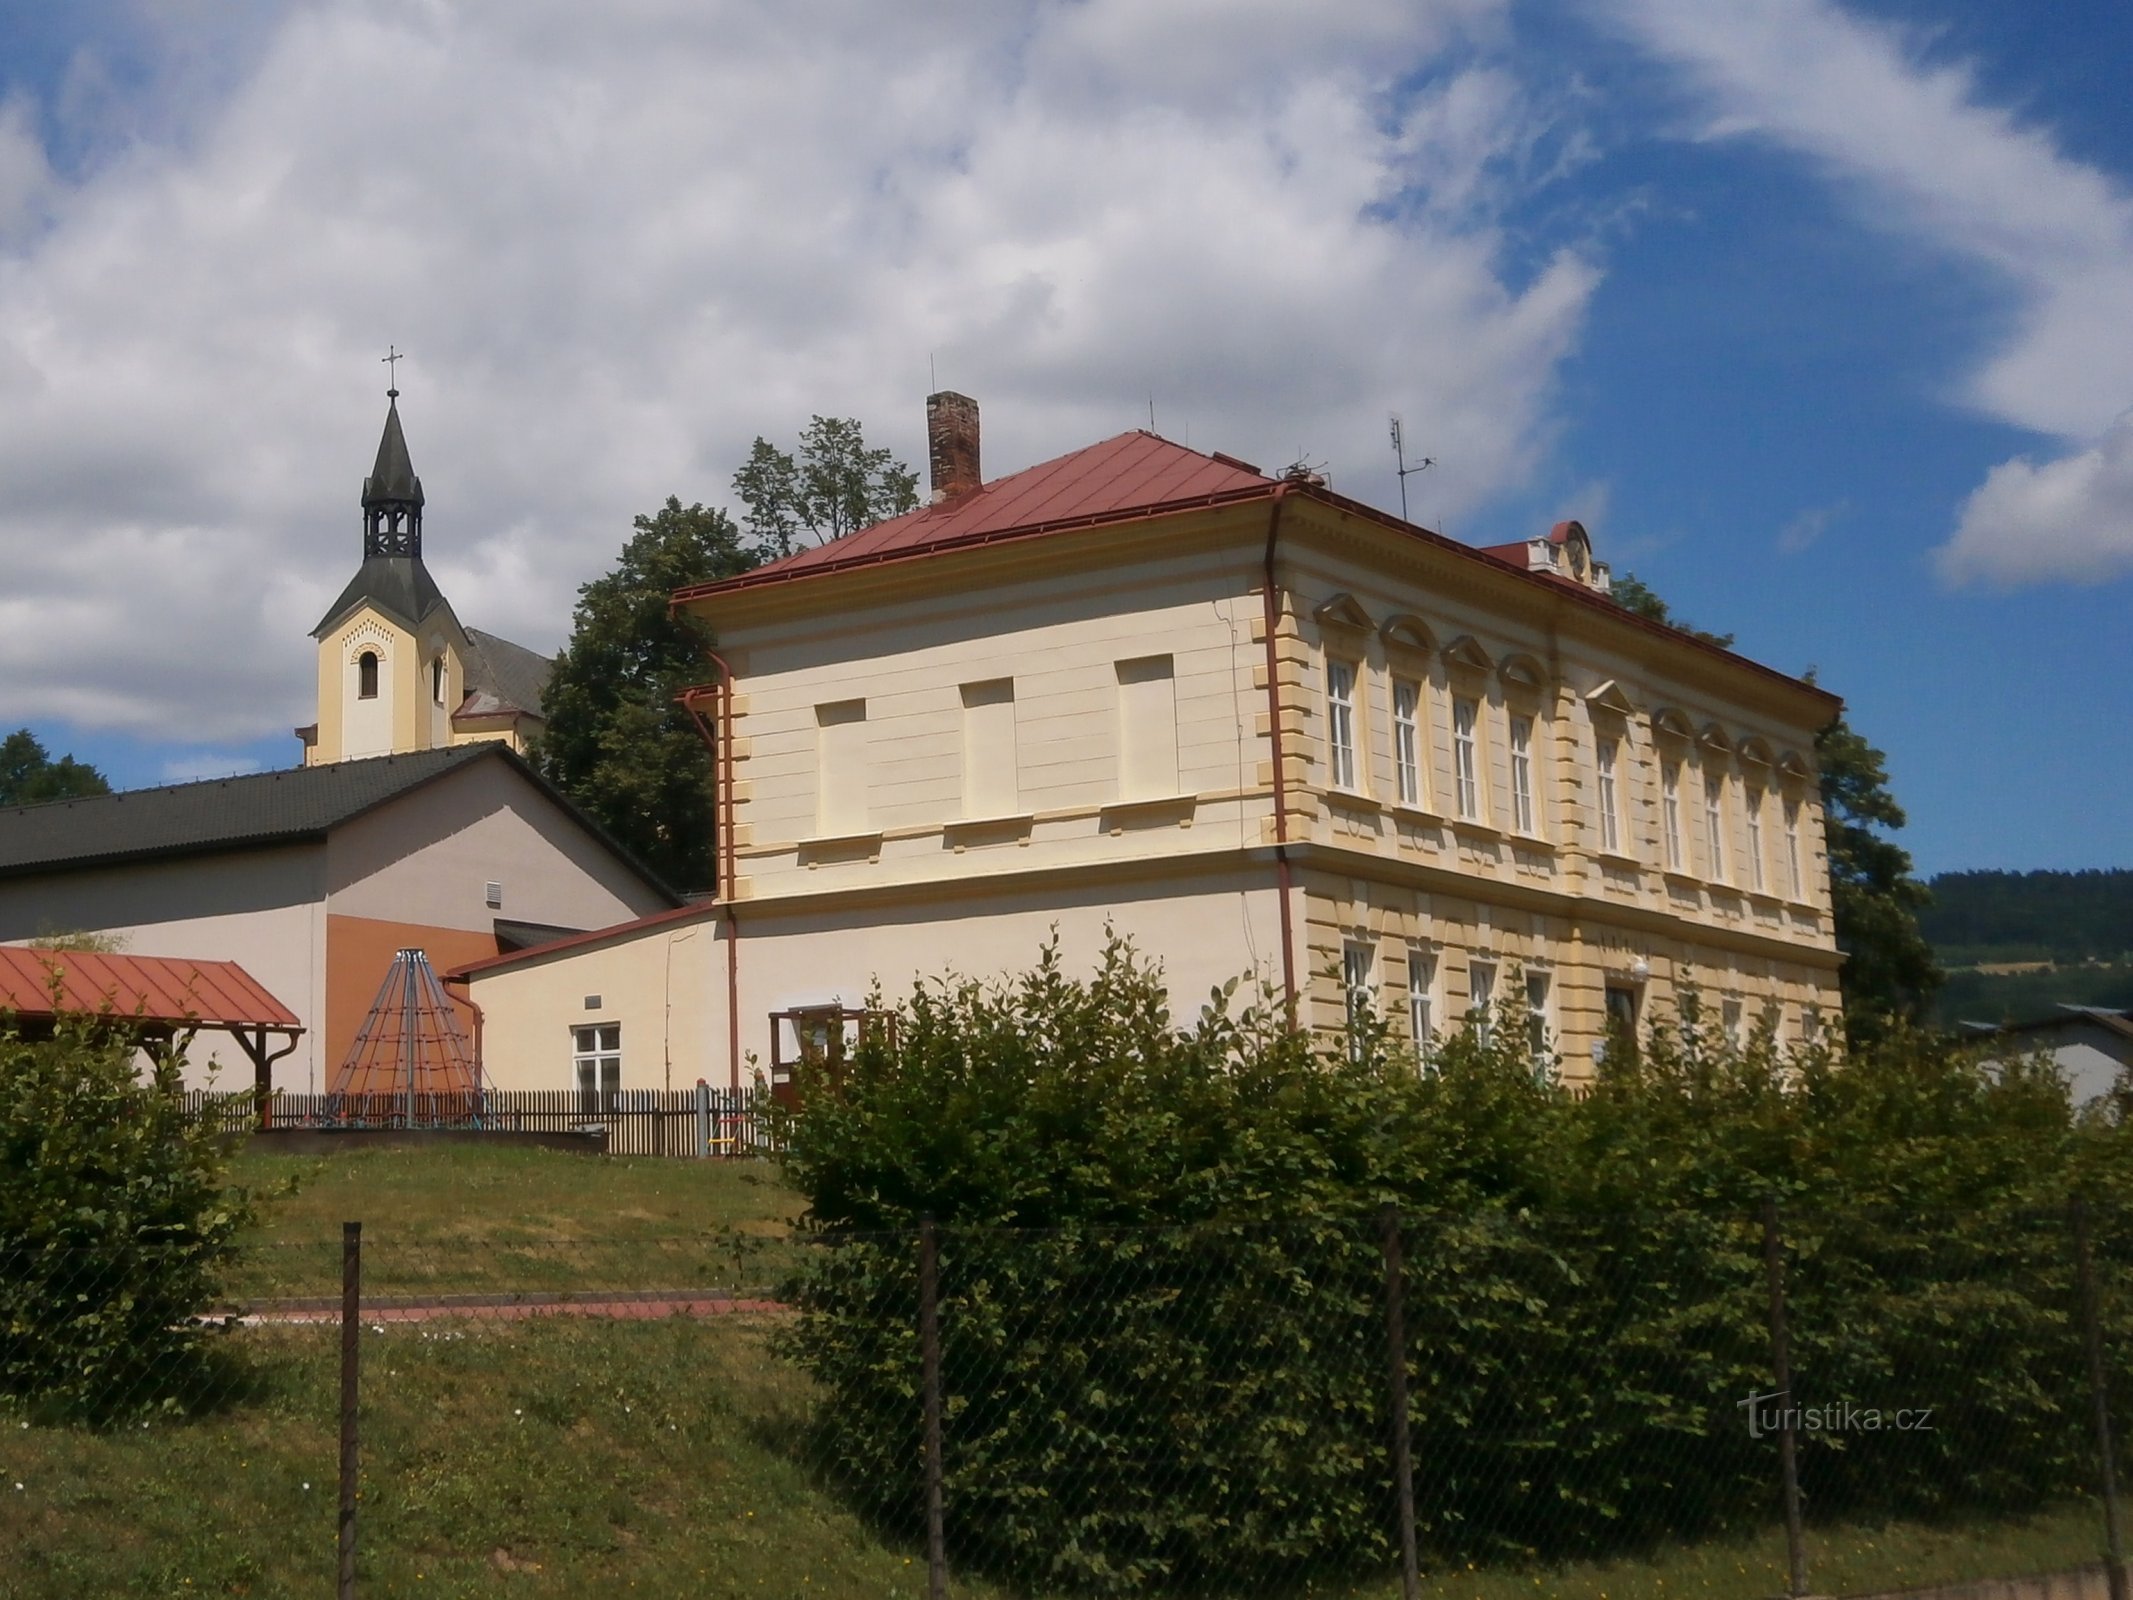 Iskola templommal a háttérben (Batňovice, 3.7.2017. július XNUMX.)